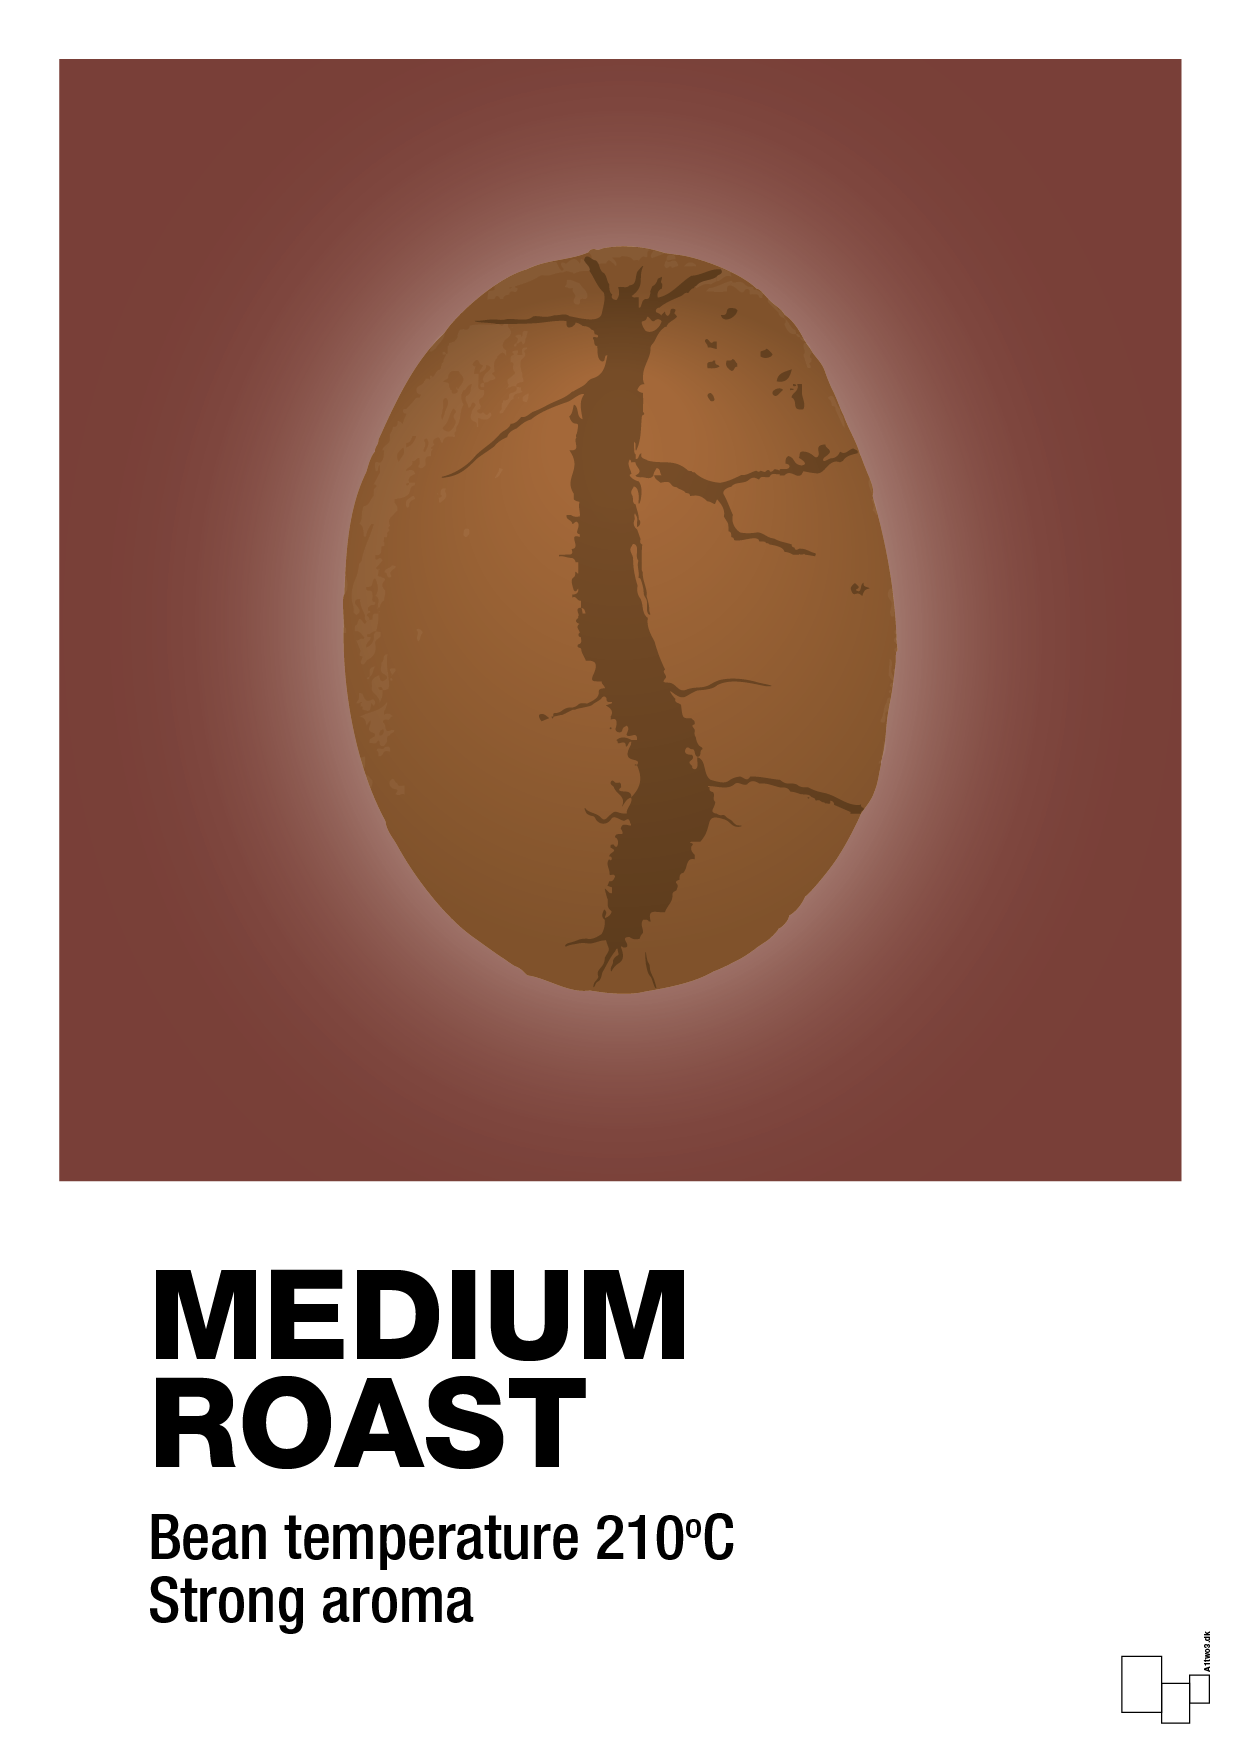 medium roast - Plakat med Mad & Drikke i Red Pepper